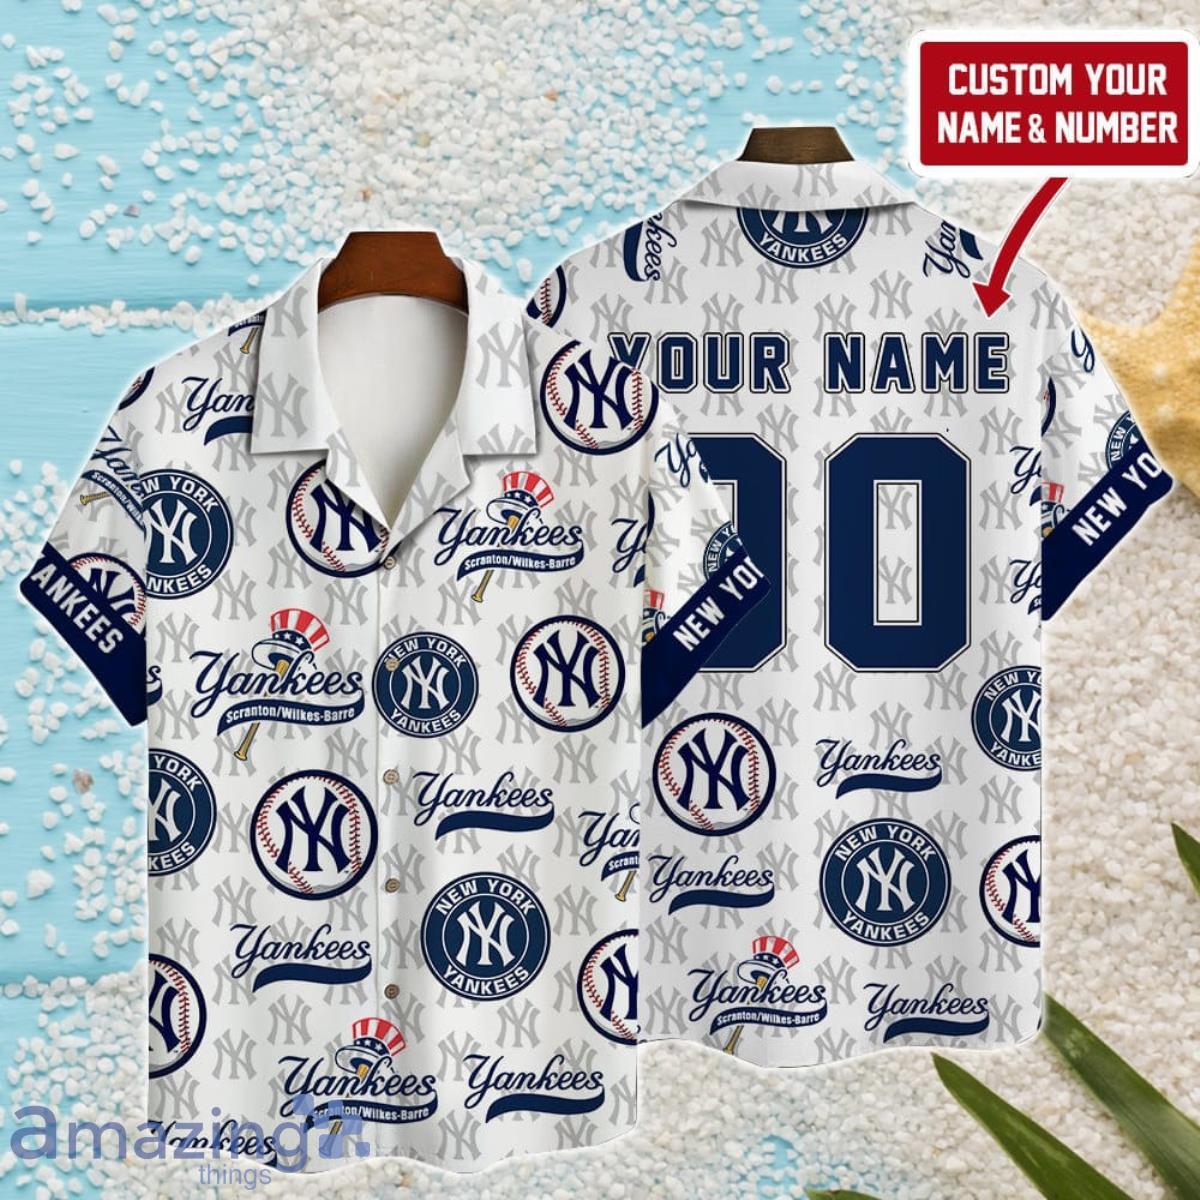 New York Yankees MLB Summer Hawaiian Shirt, Yankees Hawaiian Shirt